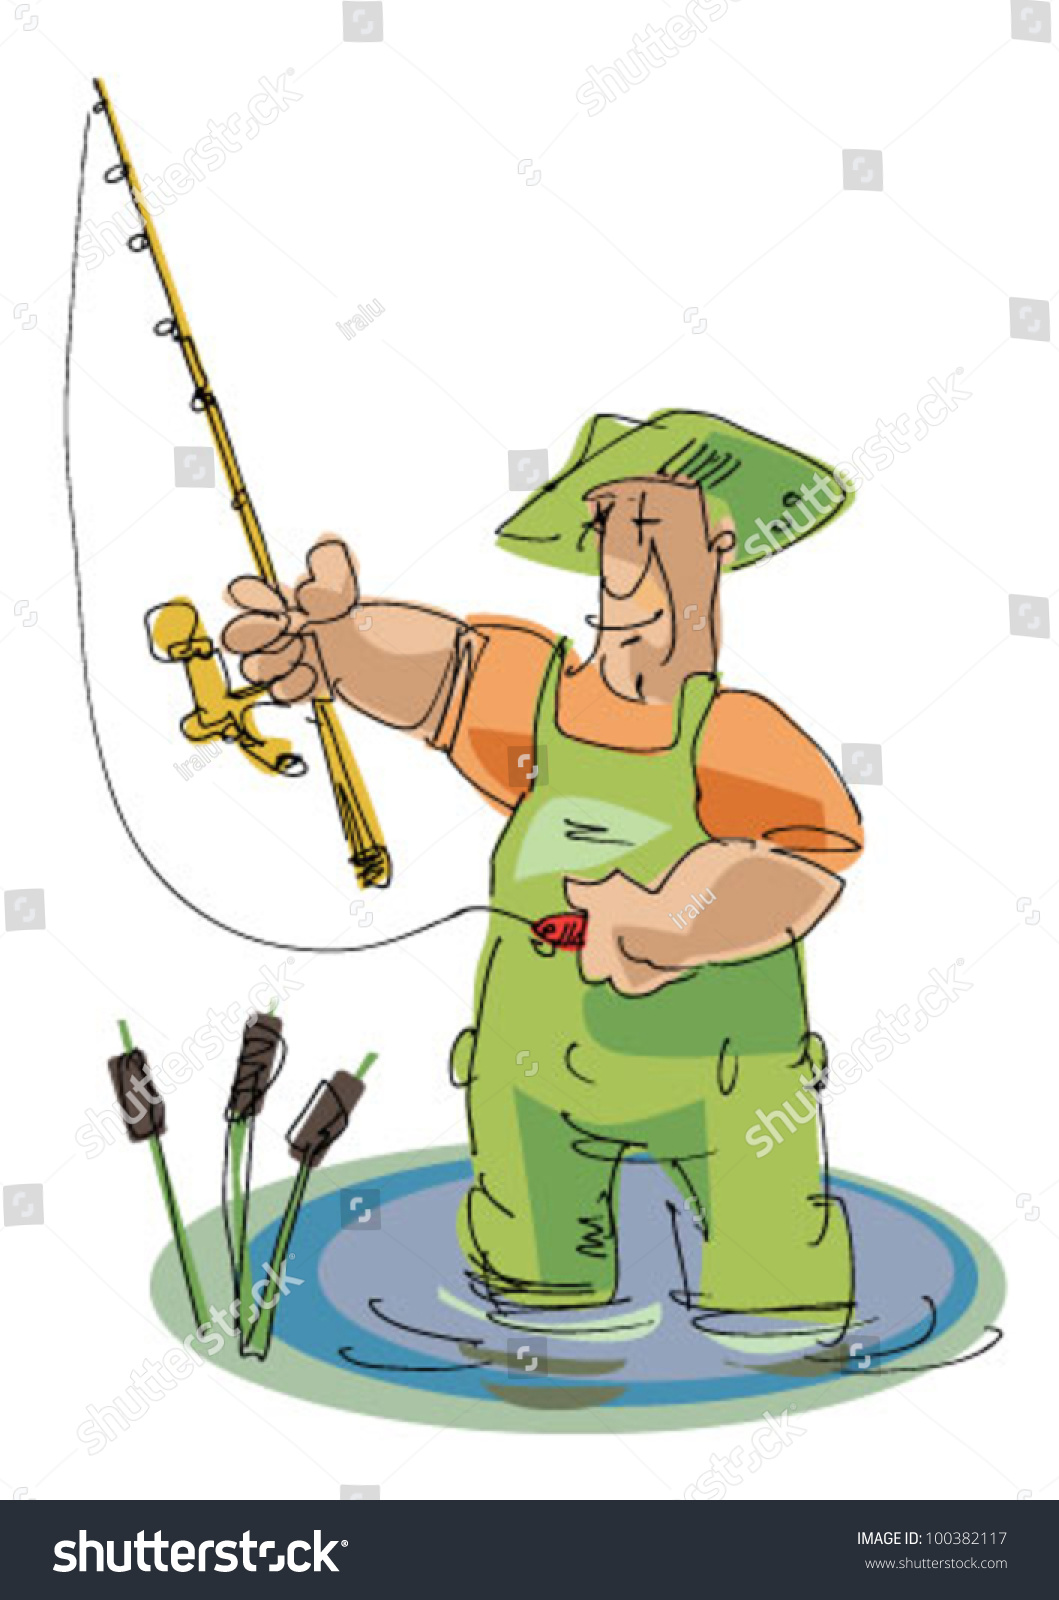 Fisher - Cartoon Stock Vector Illustration 100382117 : Shutterstock